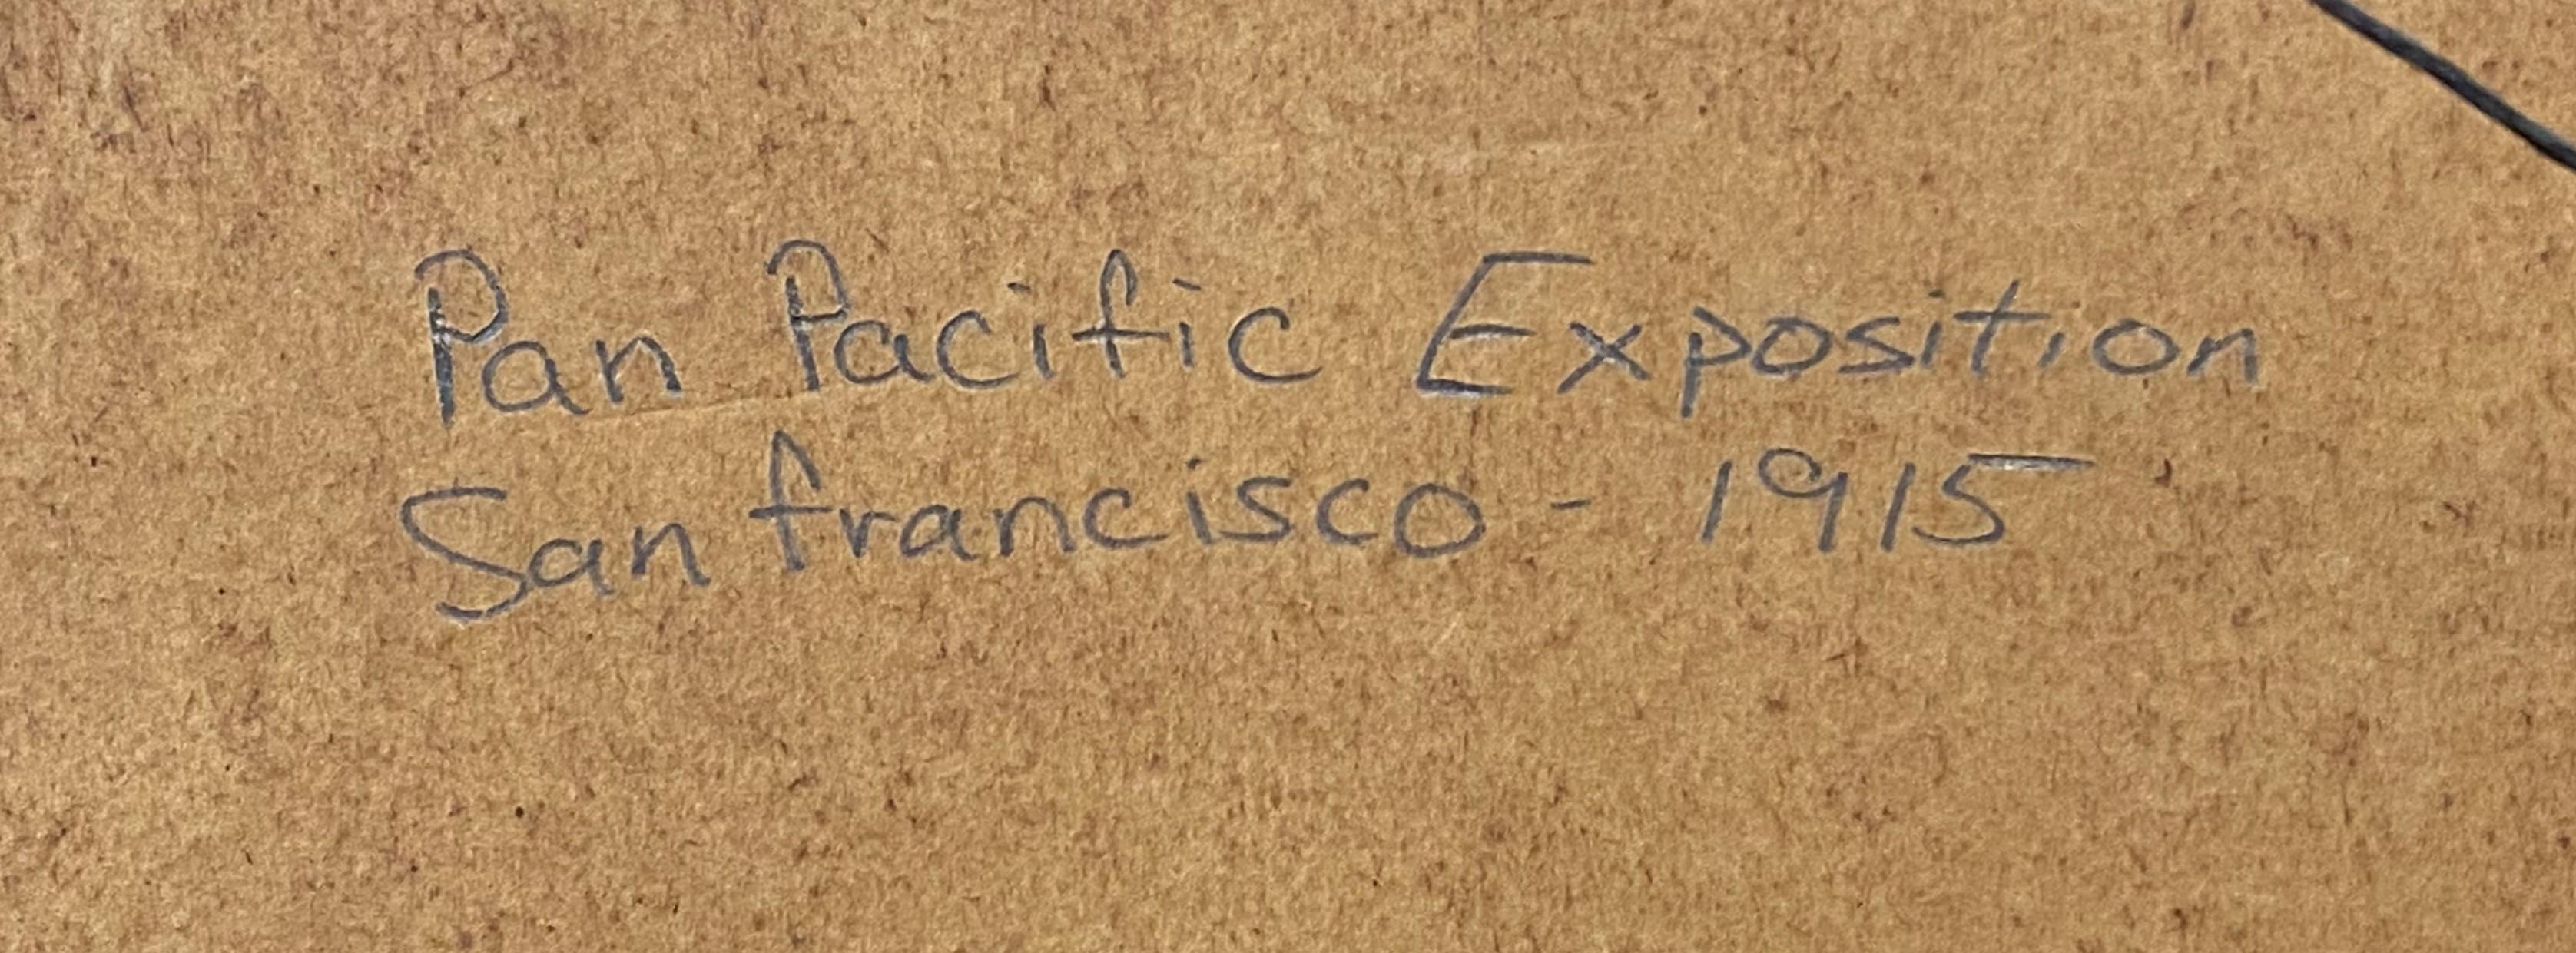 Pan Pacific Exposition, San Francisco, 1915 1